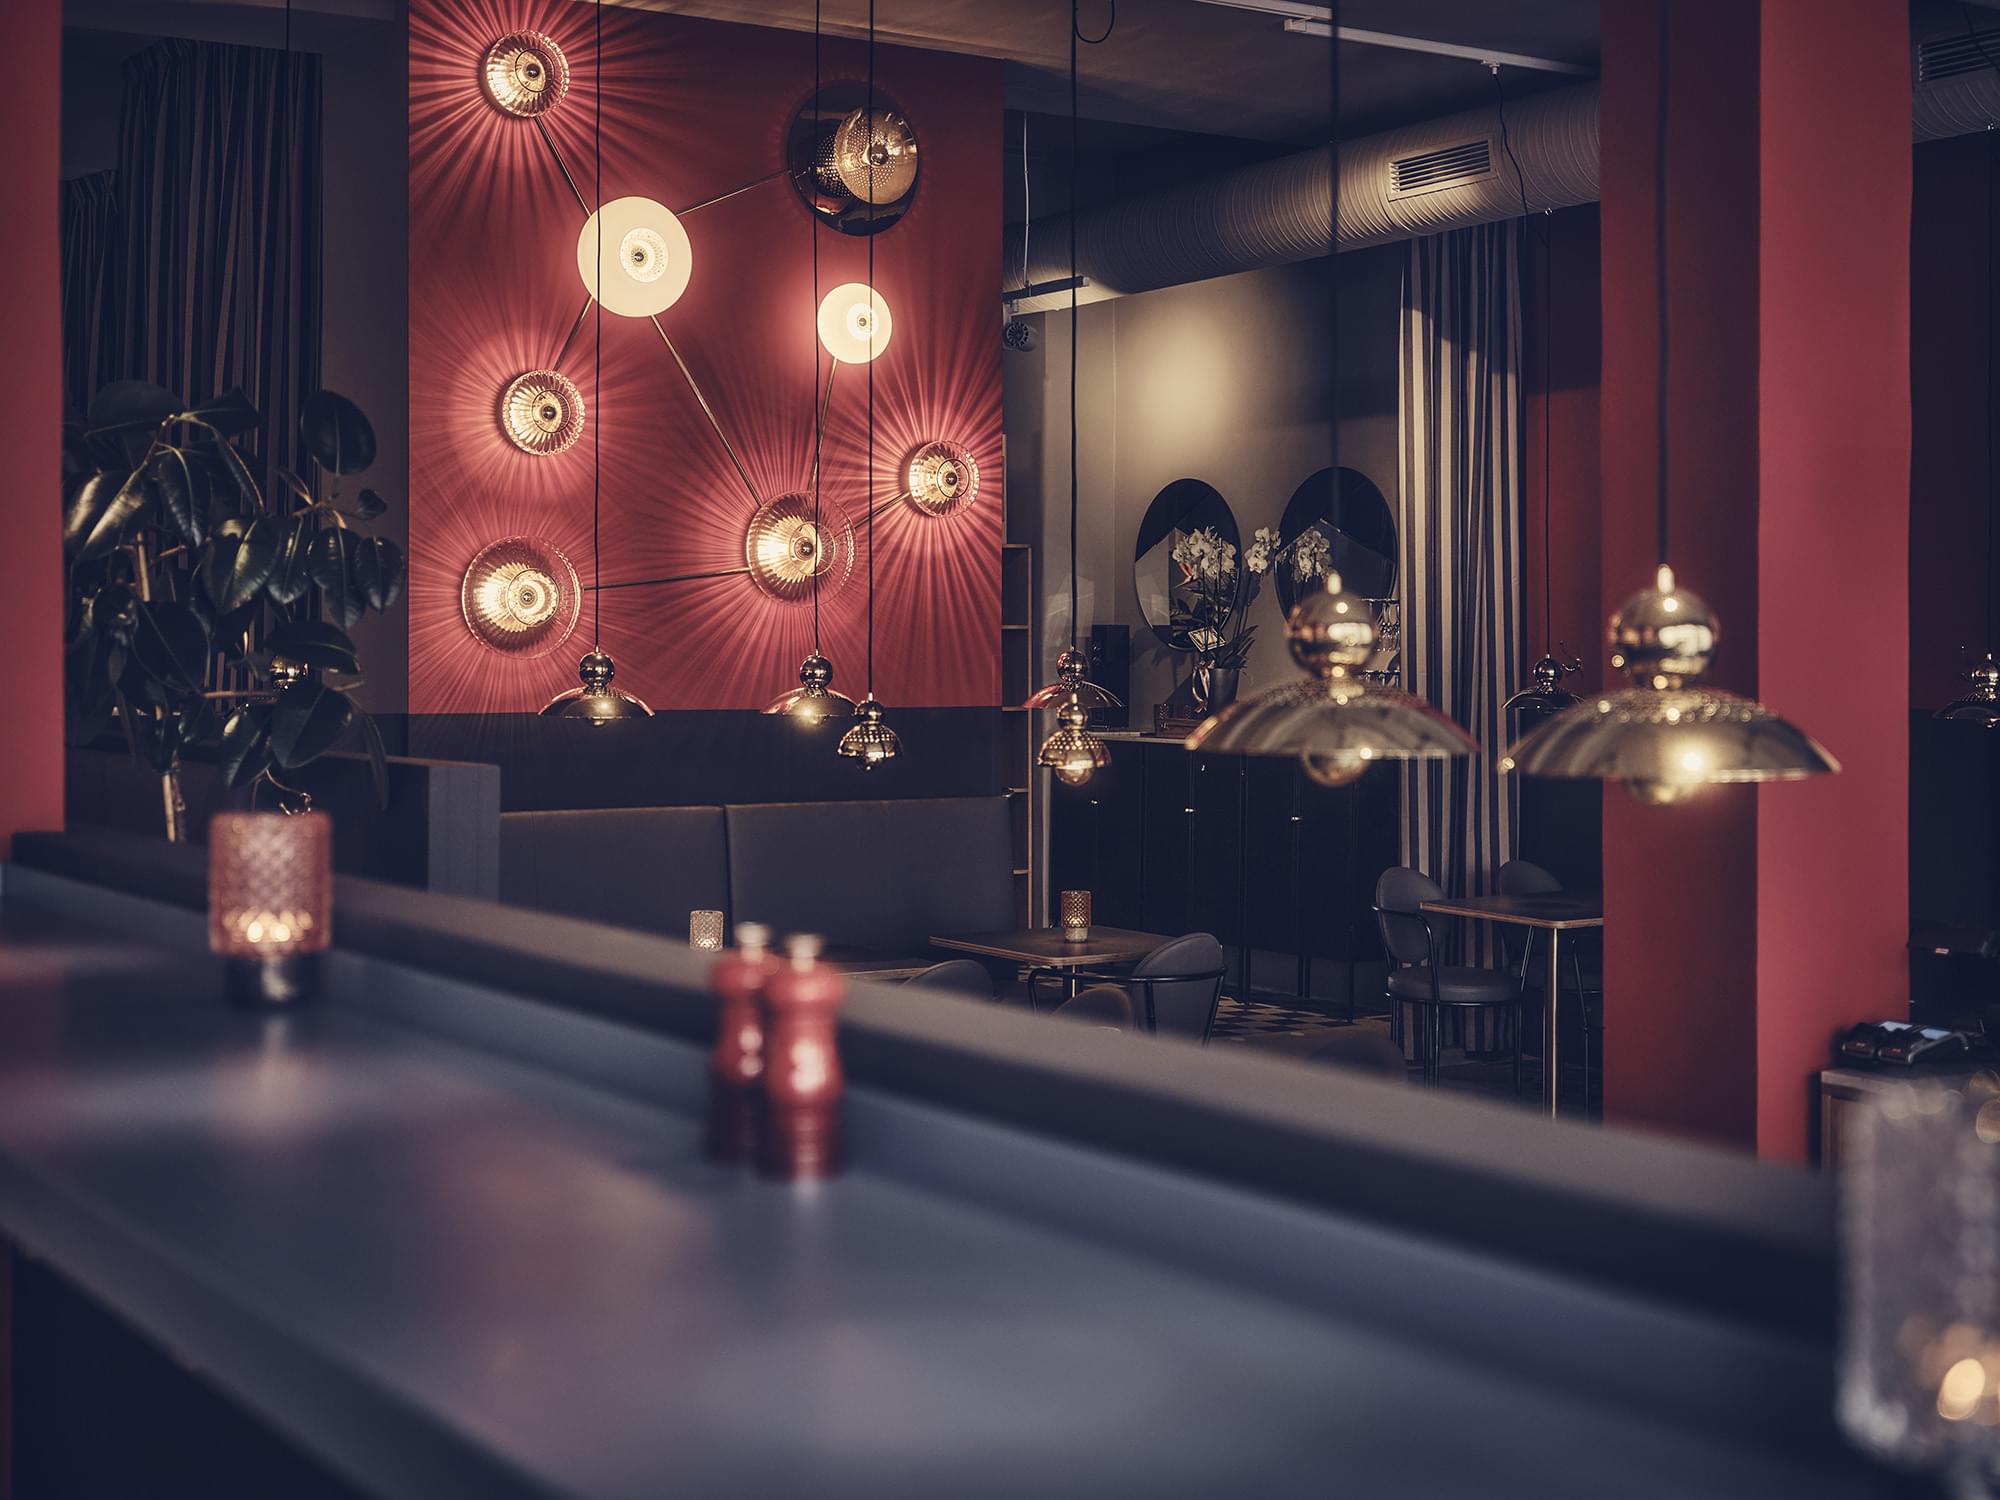 Bild tagen från bardisk ut mot restaurangen, guldfärgade lampor hänger mot en röd bakgrund.